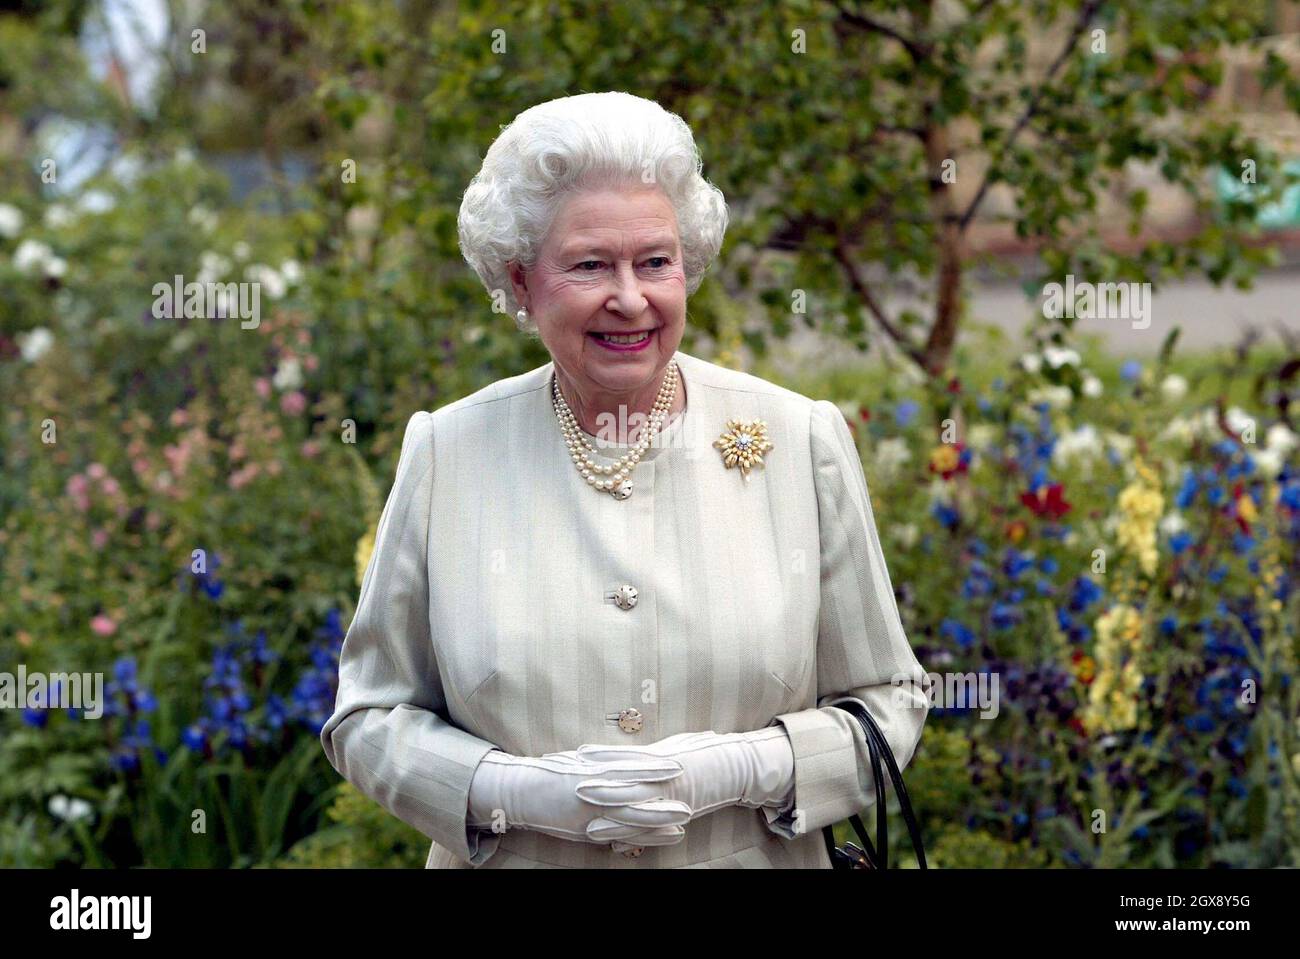 La Reine examine des expositions lors de sa visite au Chelsea Flower Show de la Royal Horticultural Society à Londres.Demi-longueur, Royals©Anwar Hussein/allaction.co.uk Banque D'Images